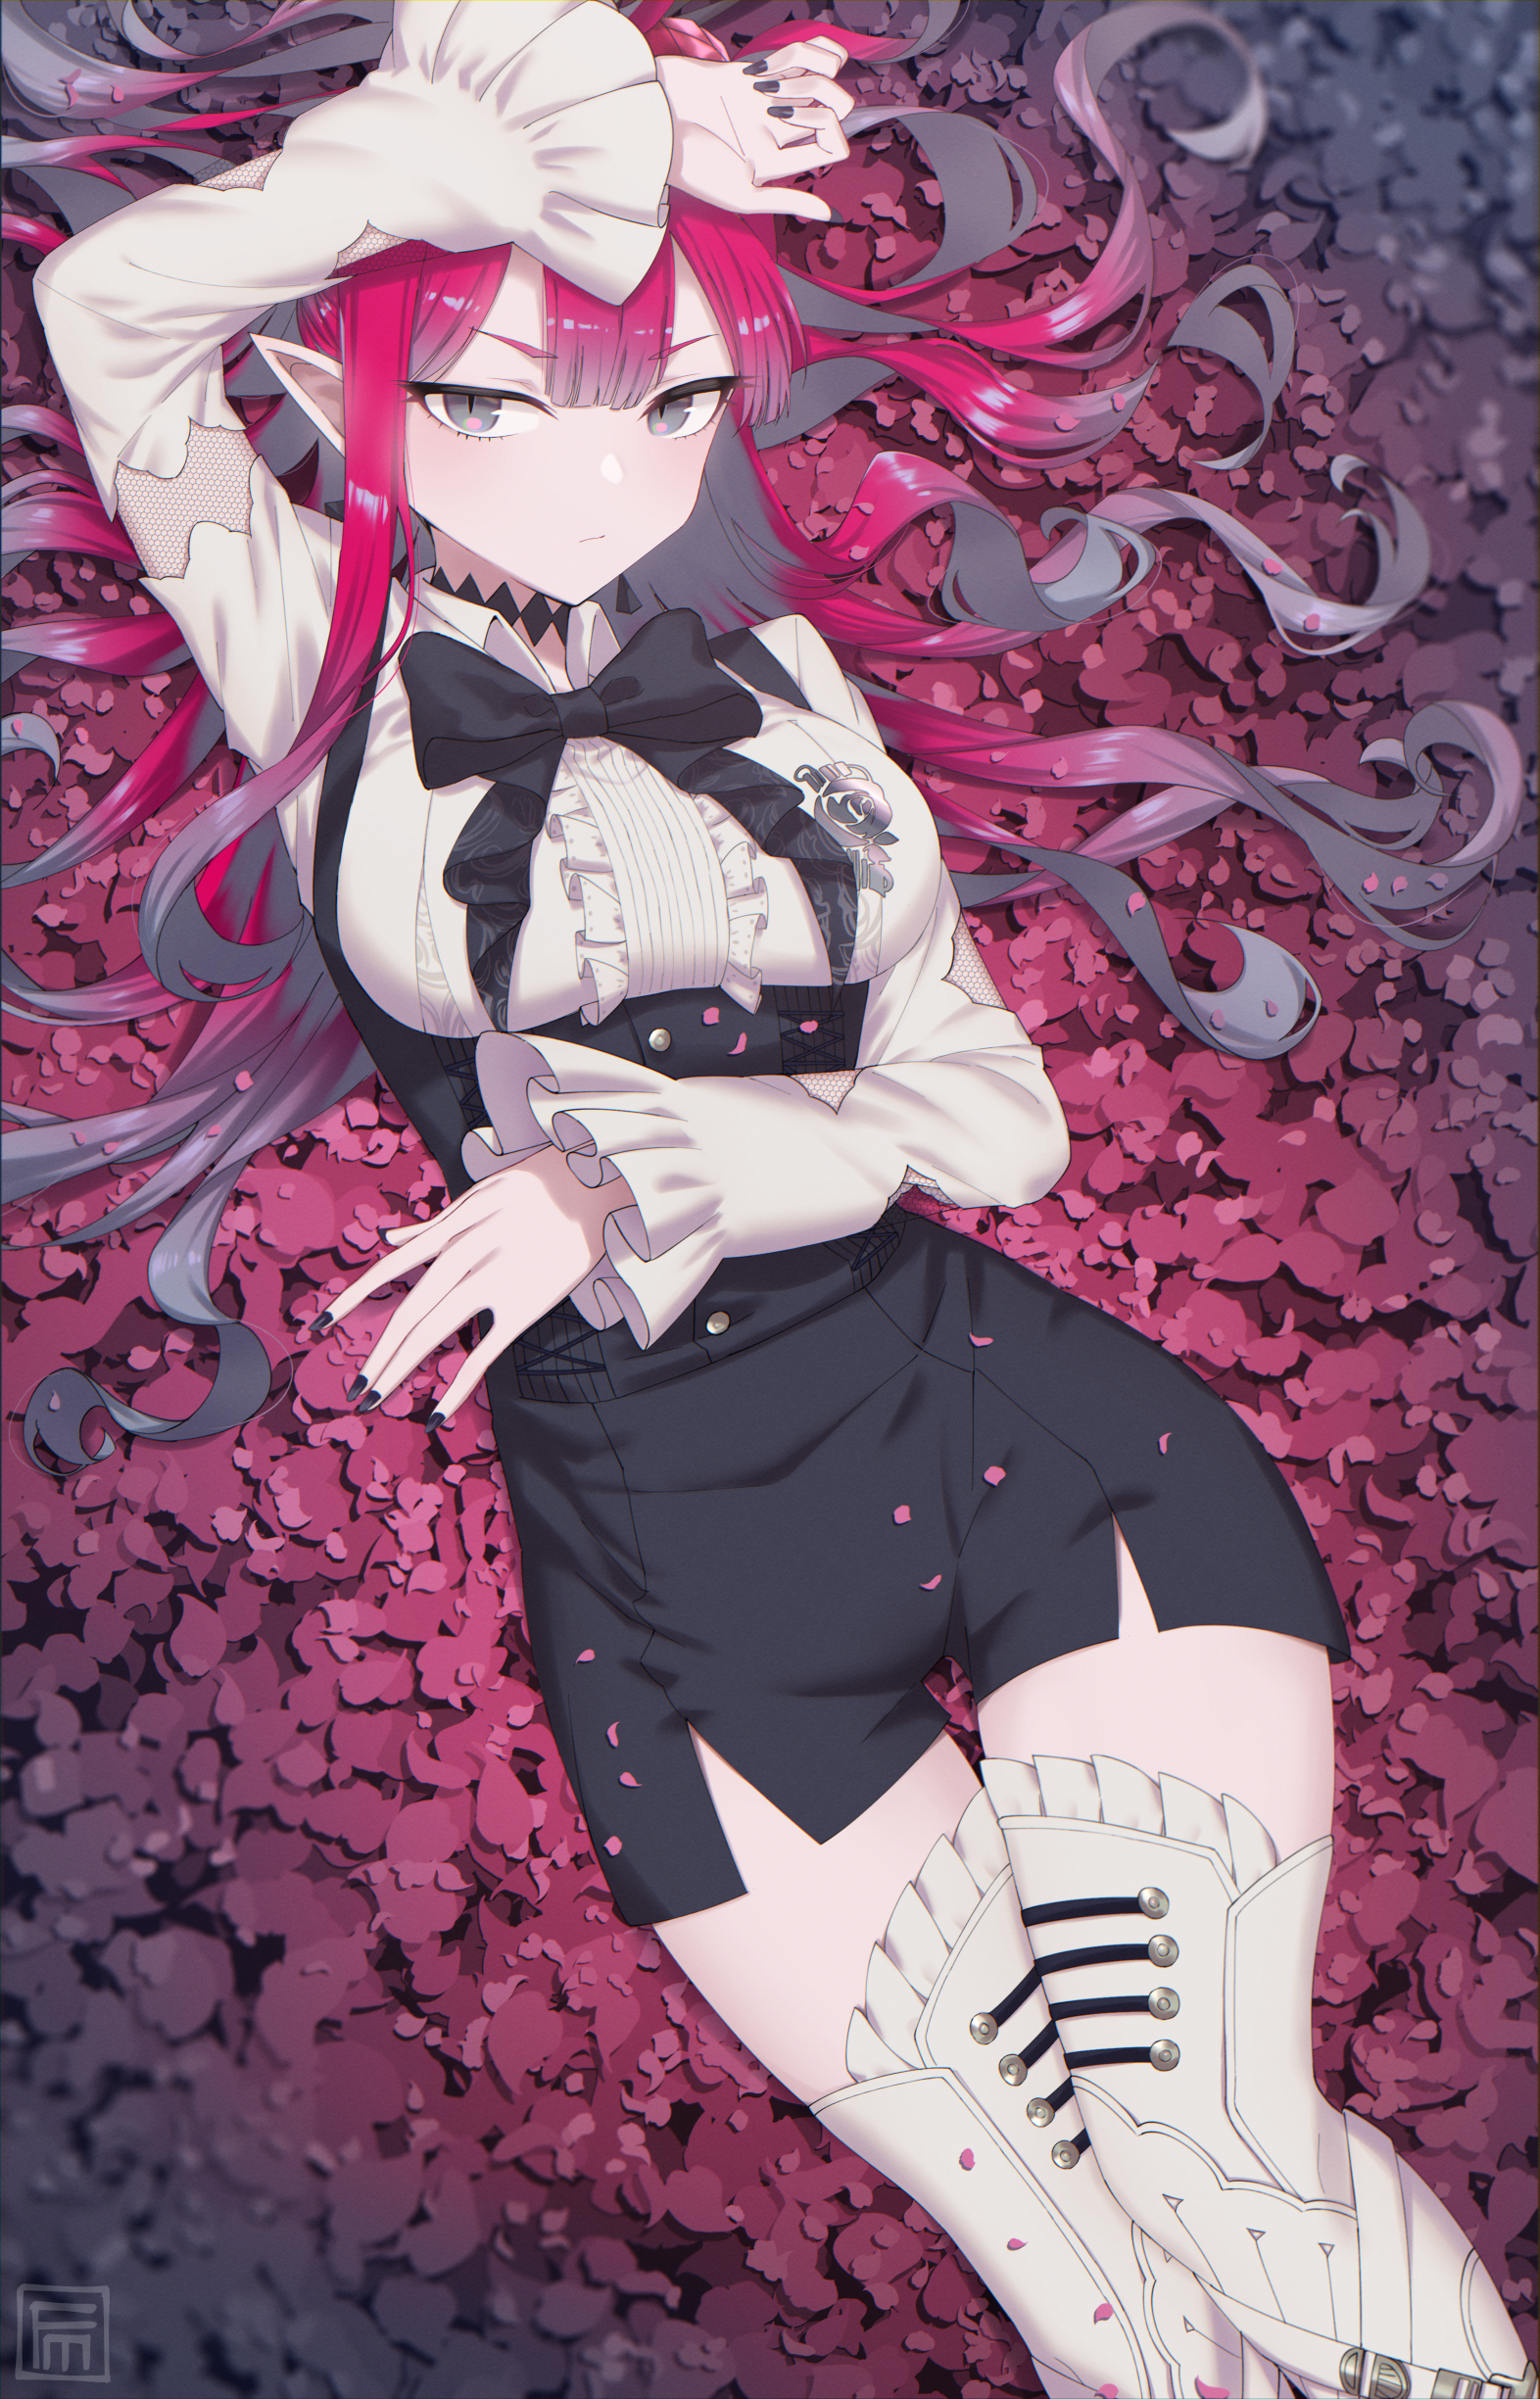 Anime Anime Girls Fate Series Fate Grand Order Baobhan Sith Long Hair Redhead Solo Artwork Digital A 1572x2449